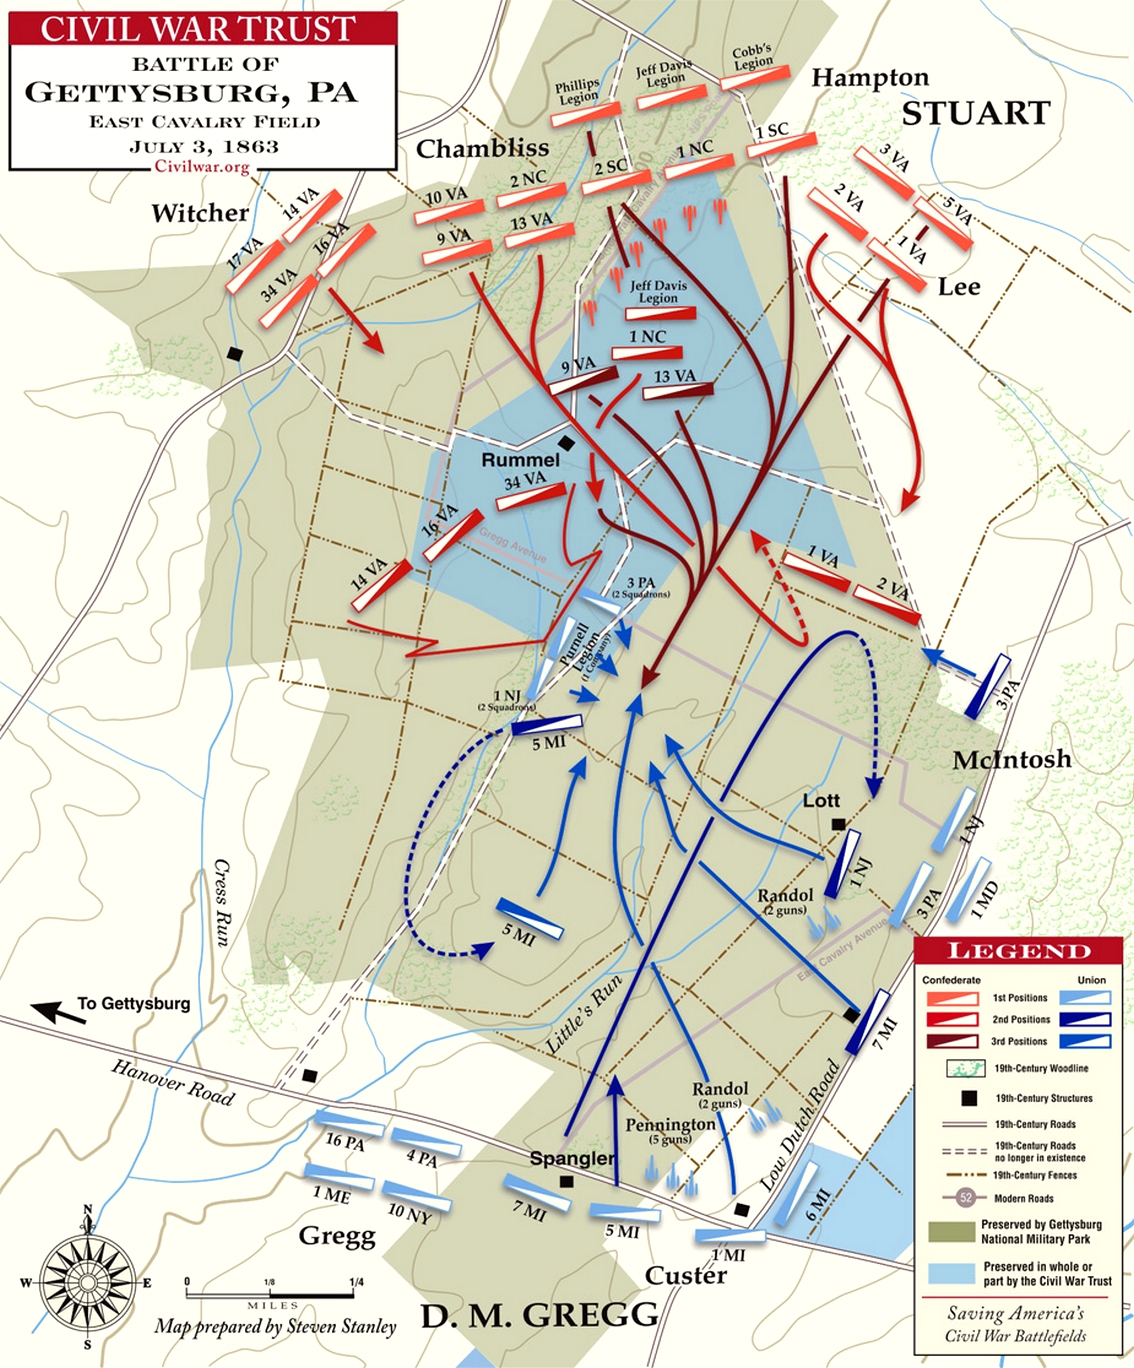 East Cavalry Field, Battle of Gettysburg Map.jpg